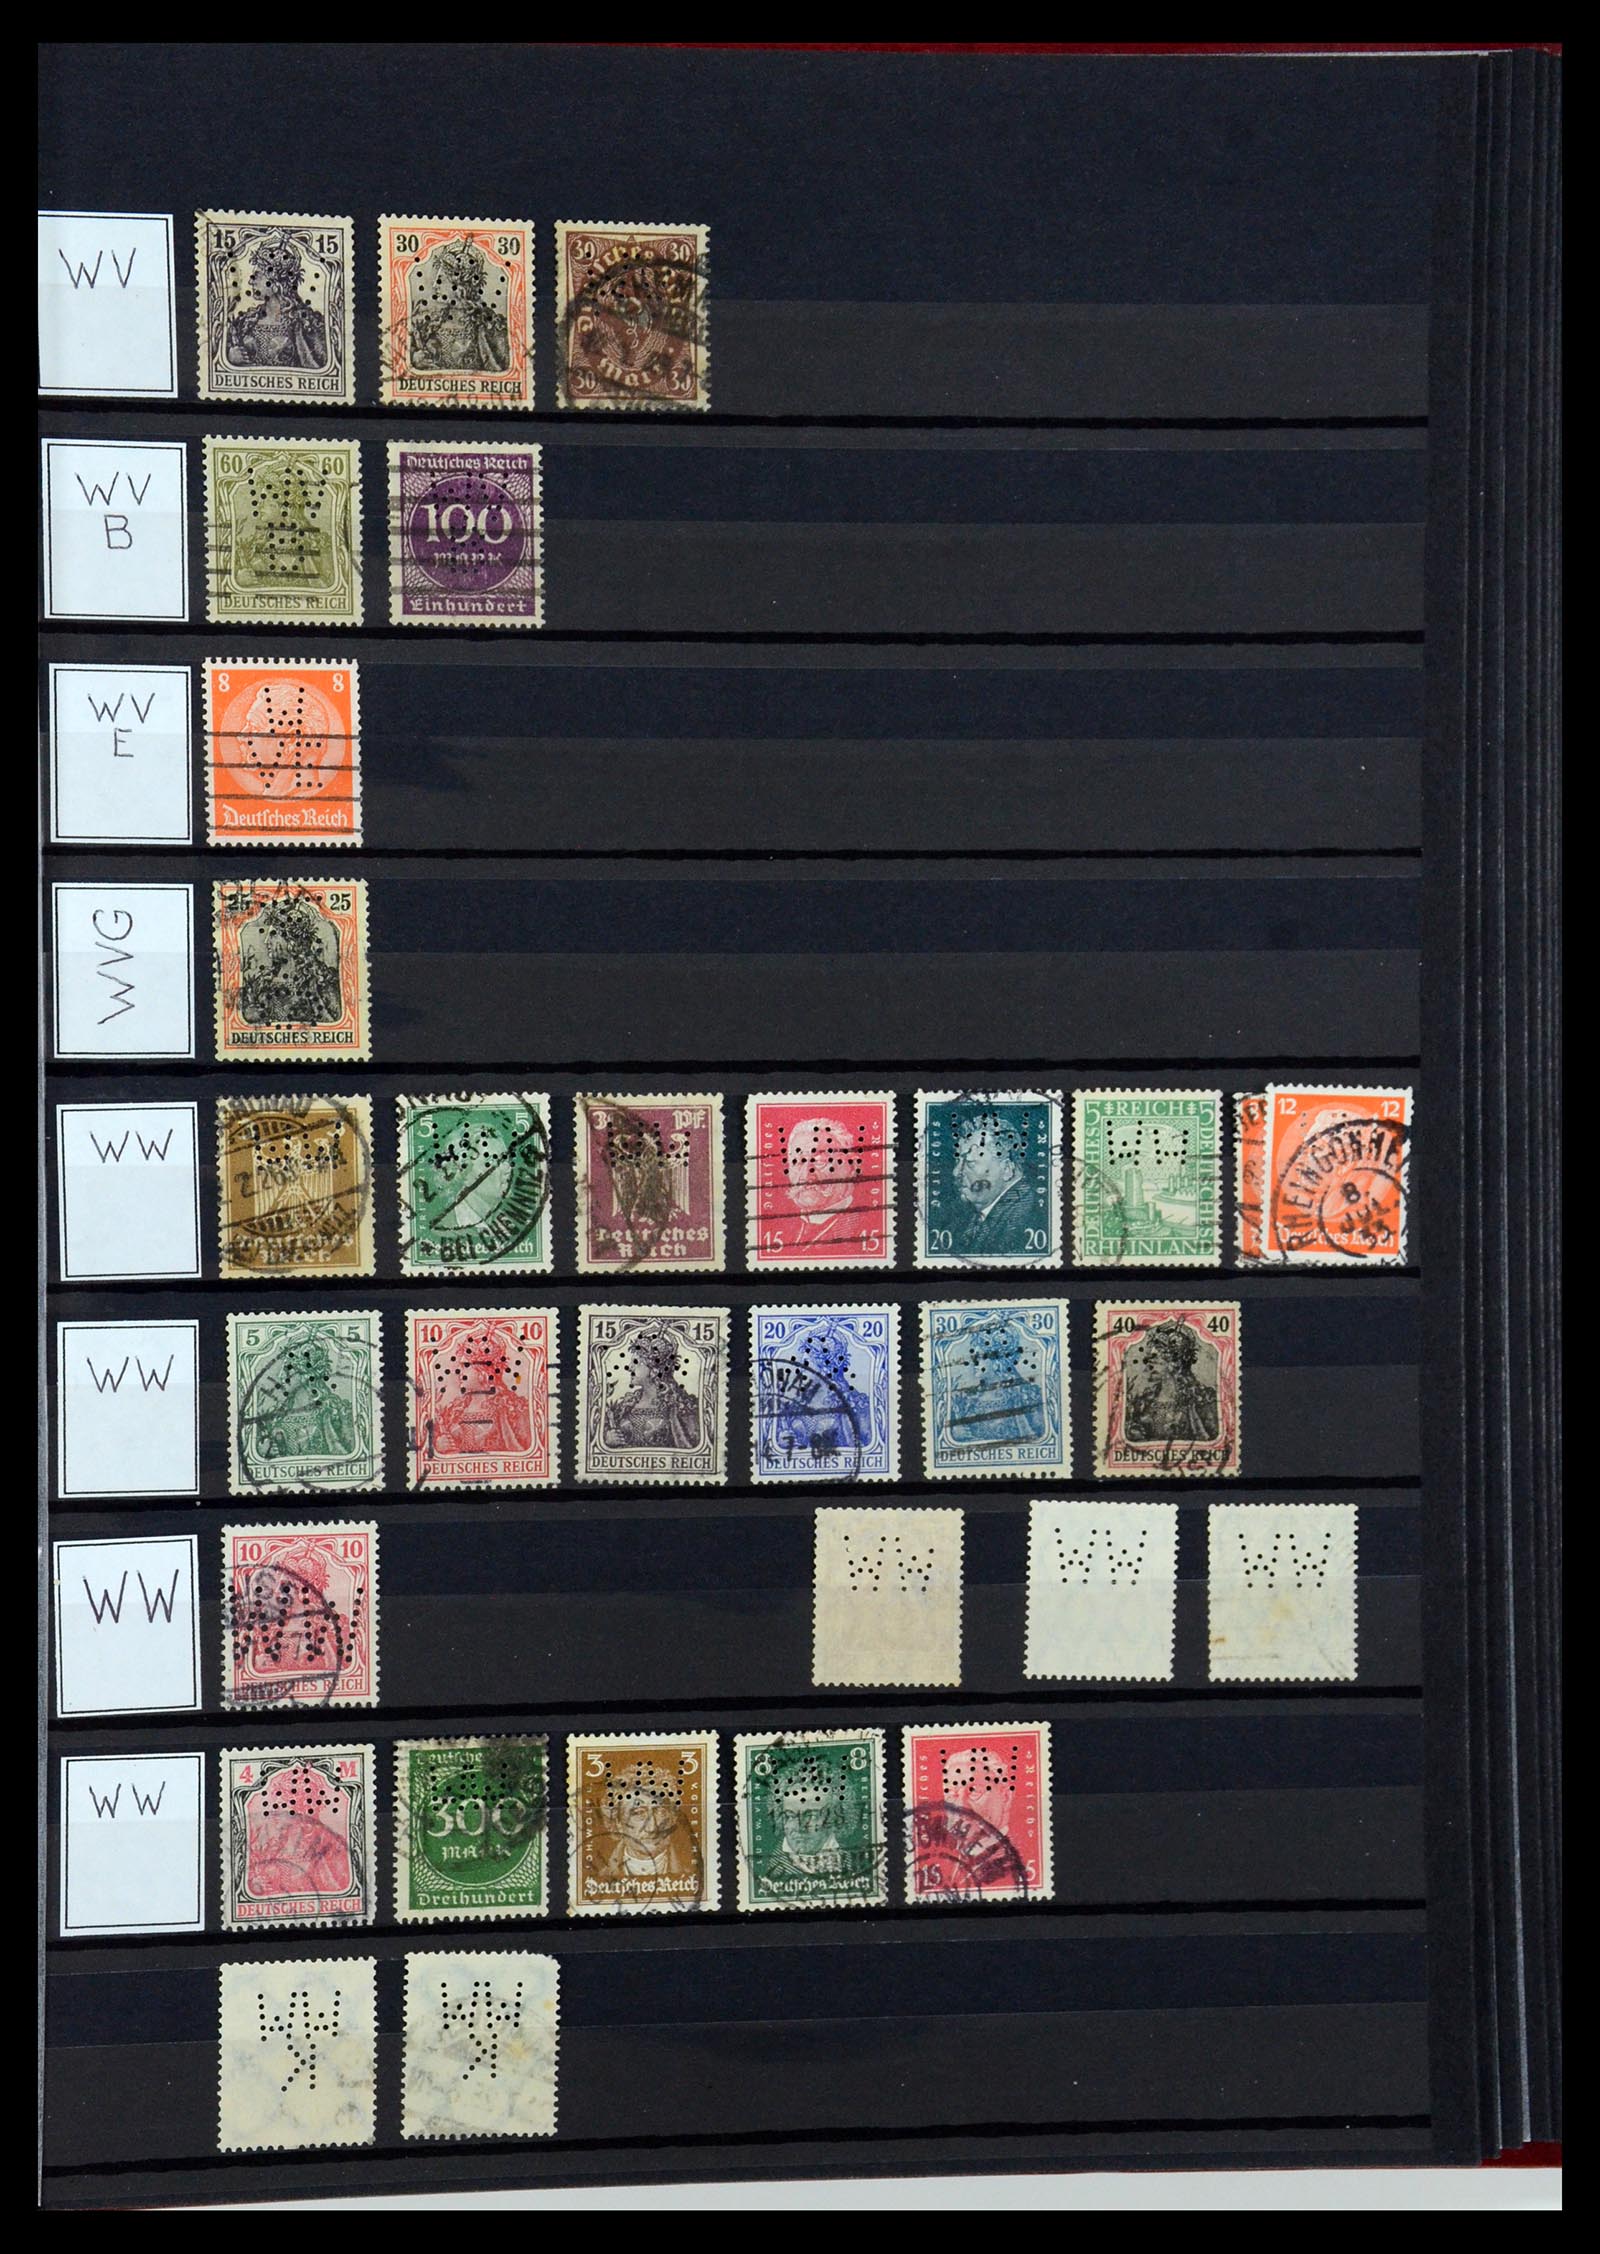 36405 344 - Stamp collection 36405 German Reich perfins 1880-1945.